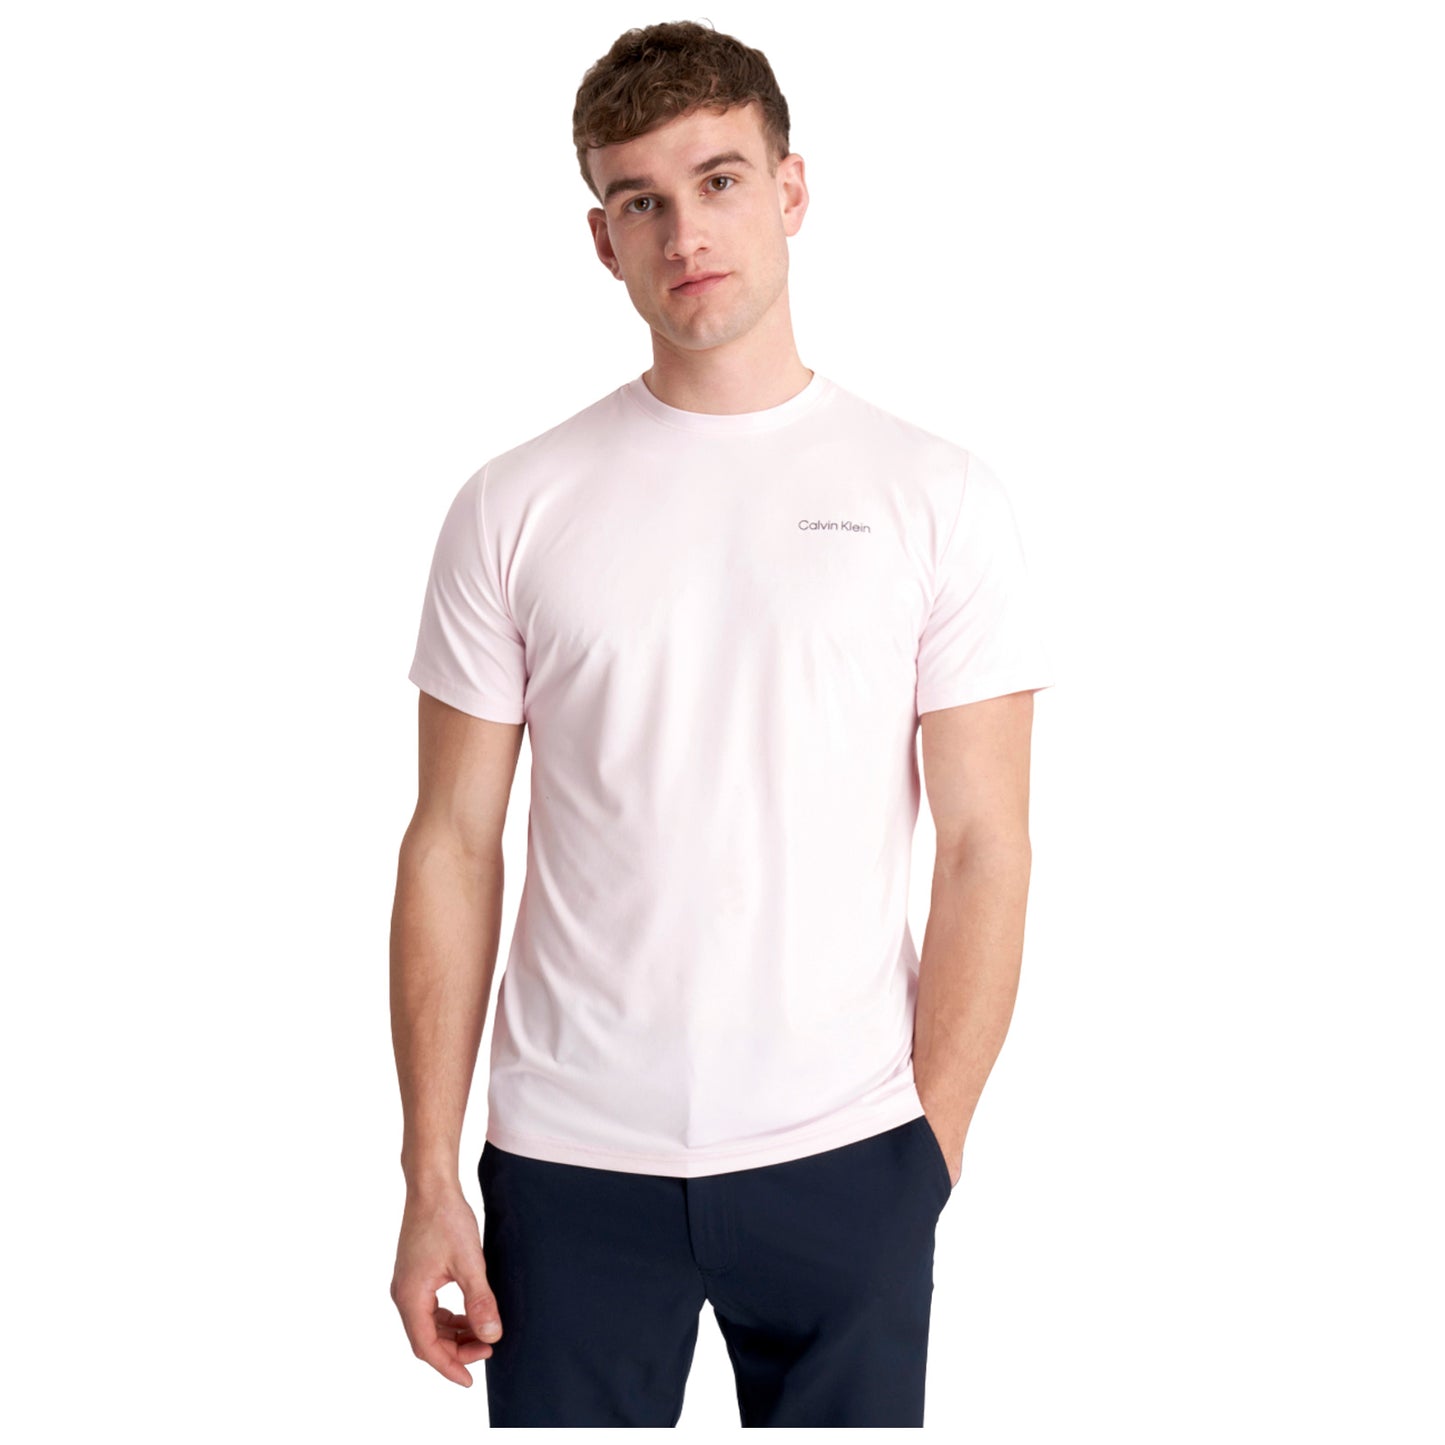 Calvin Klein Mens Newport T-Shirt